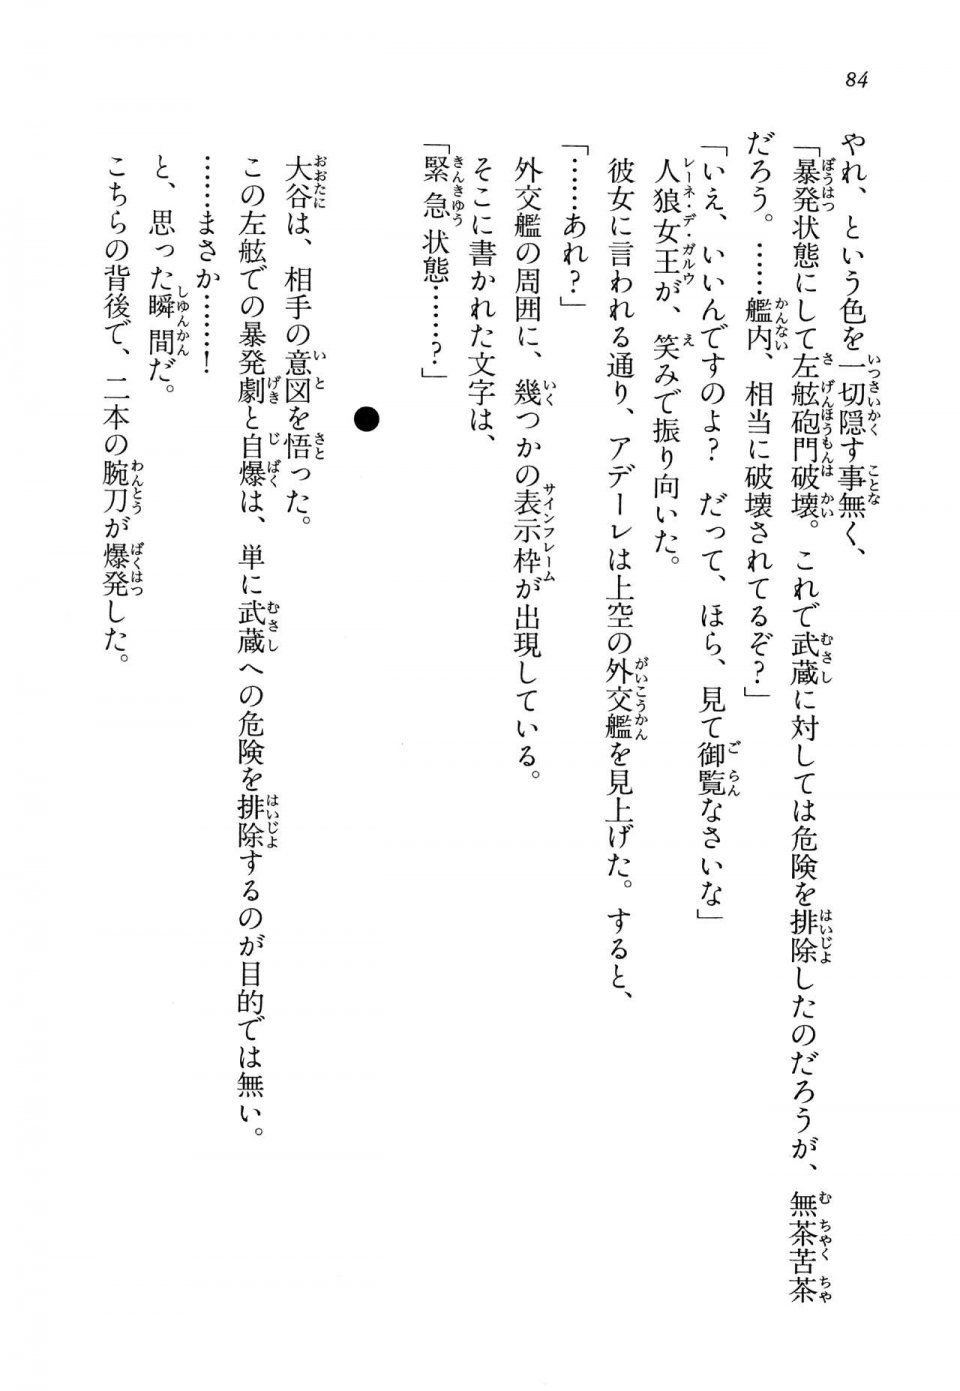 Kyoukai Senjou no Horizon LN Vol 14(6B) - Photo #84